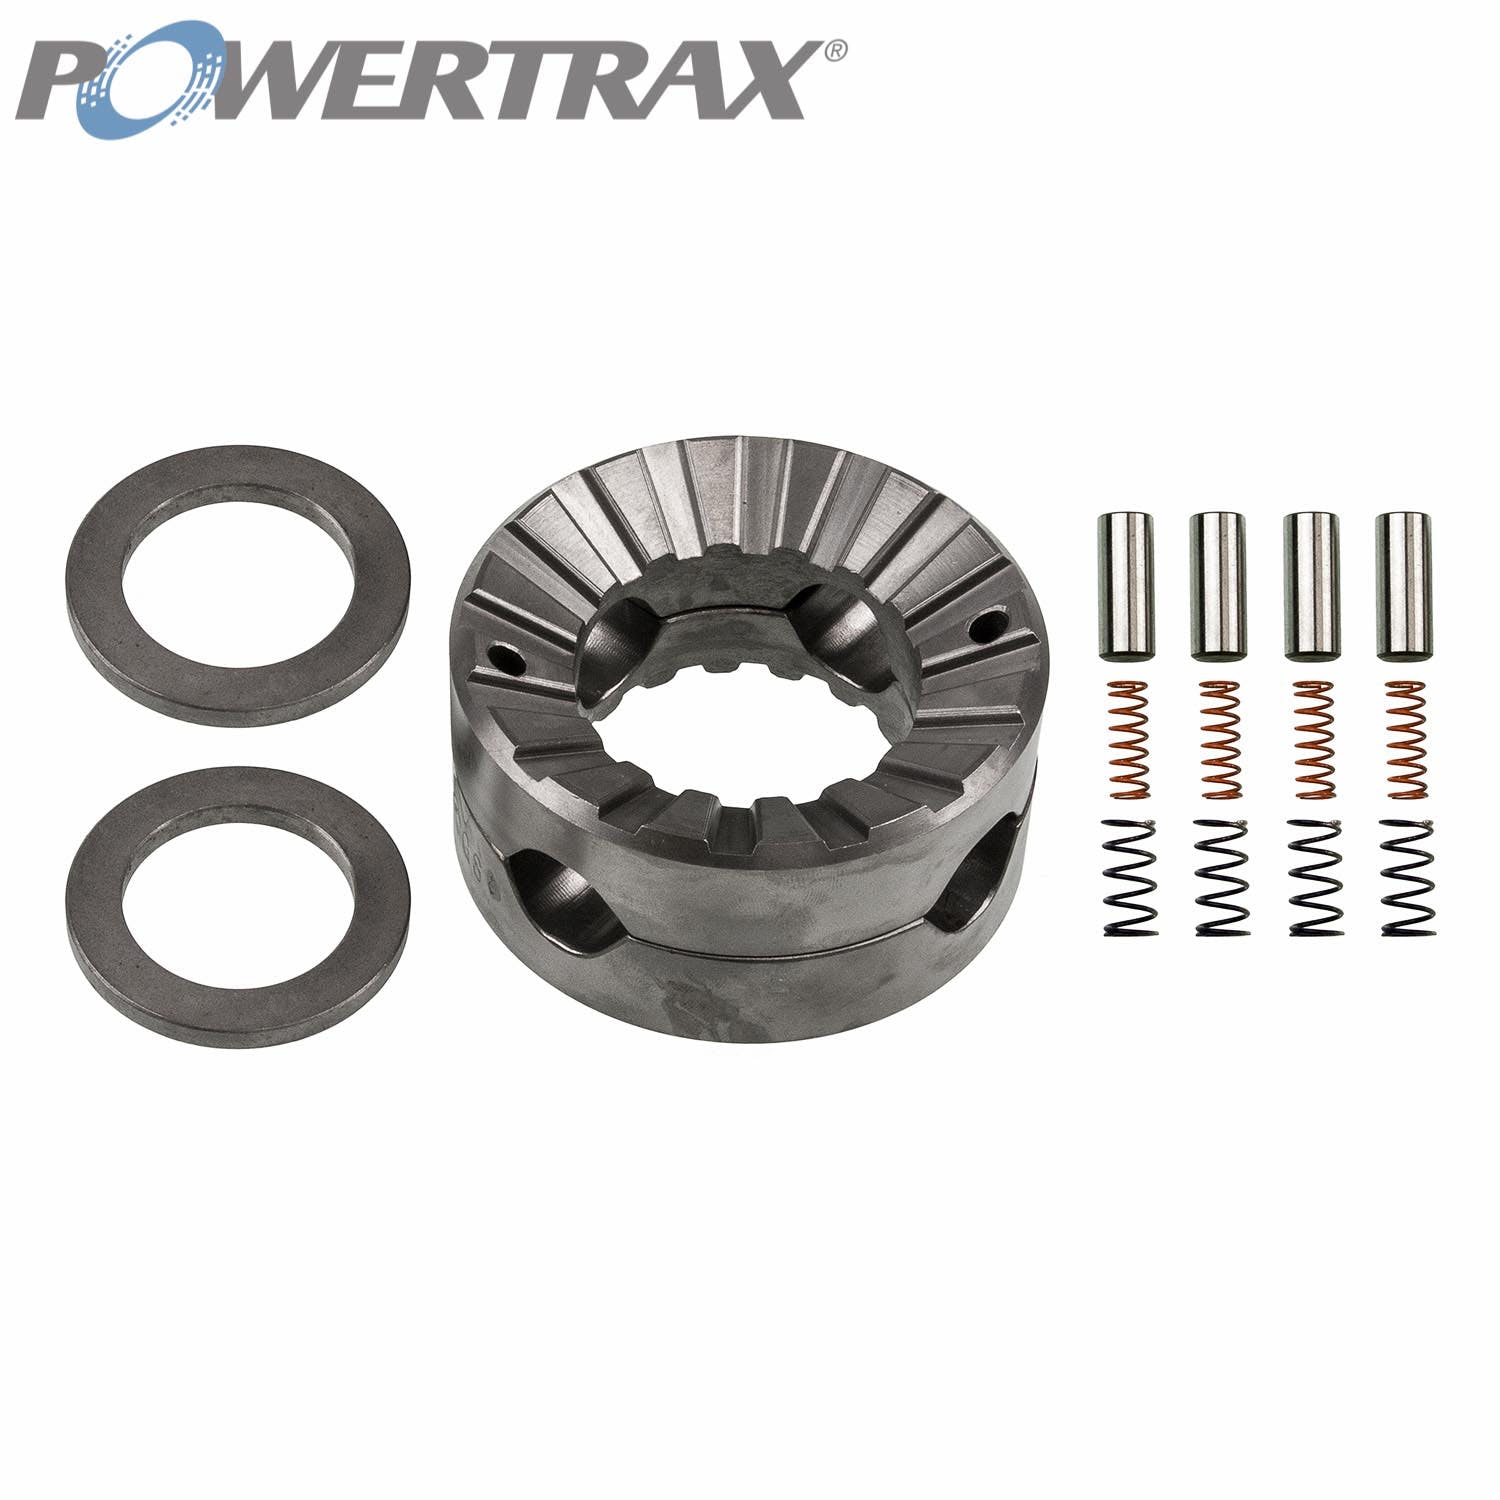 PowerTrax 1512-LR Lock Right Locker